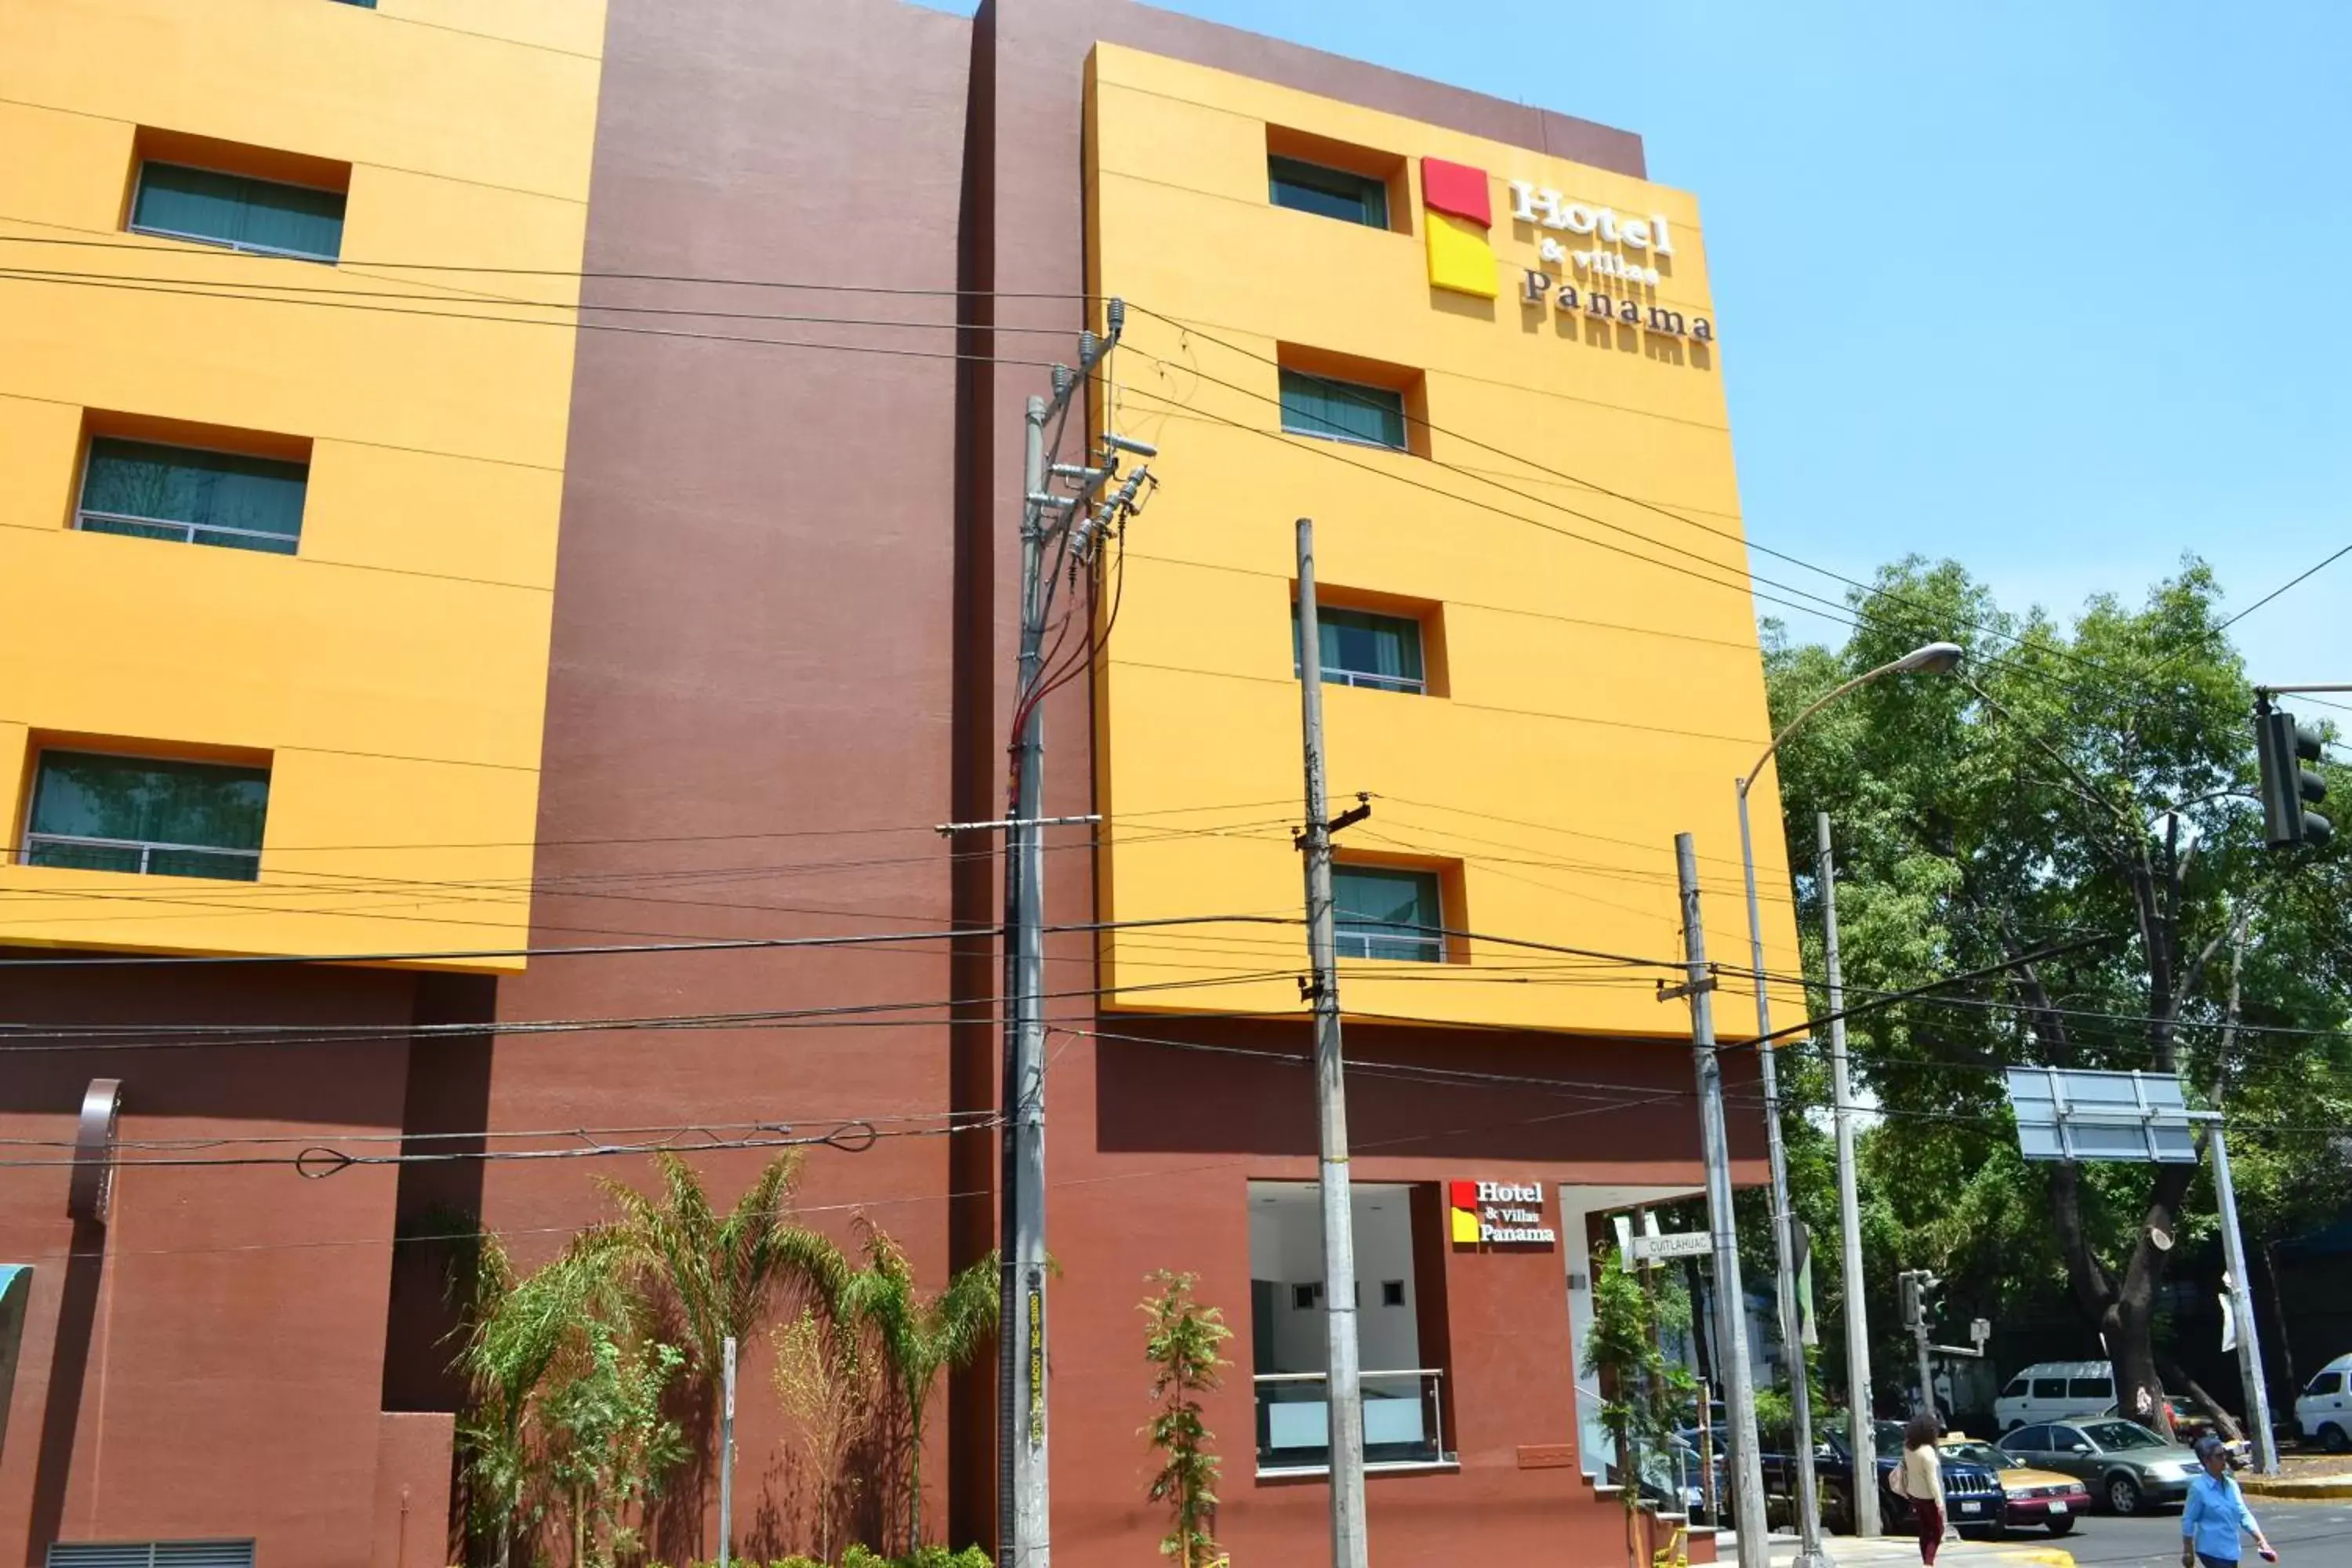 Facade/entrance, Property Building in Hotel & Villas Panamá